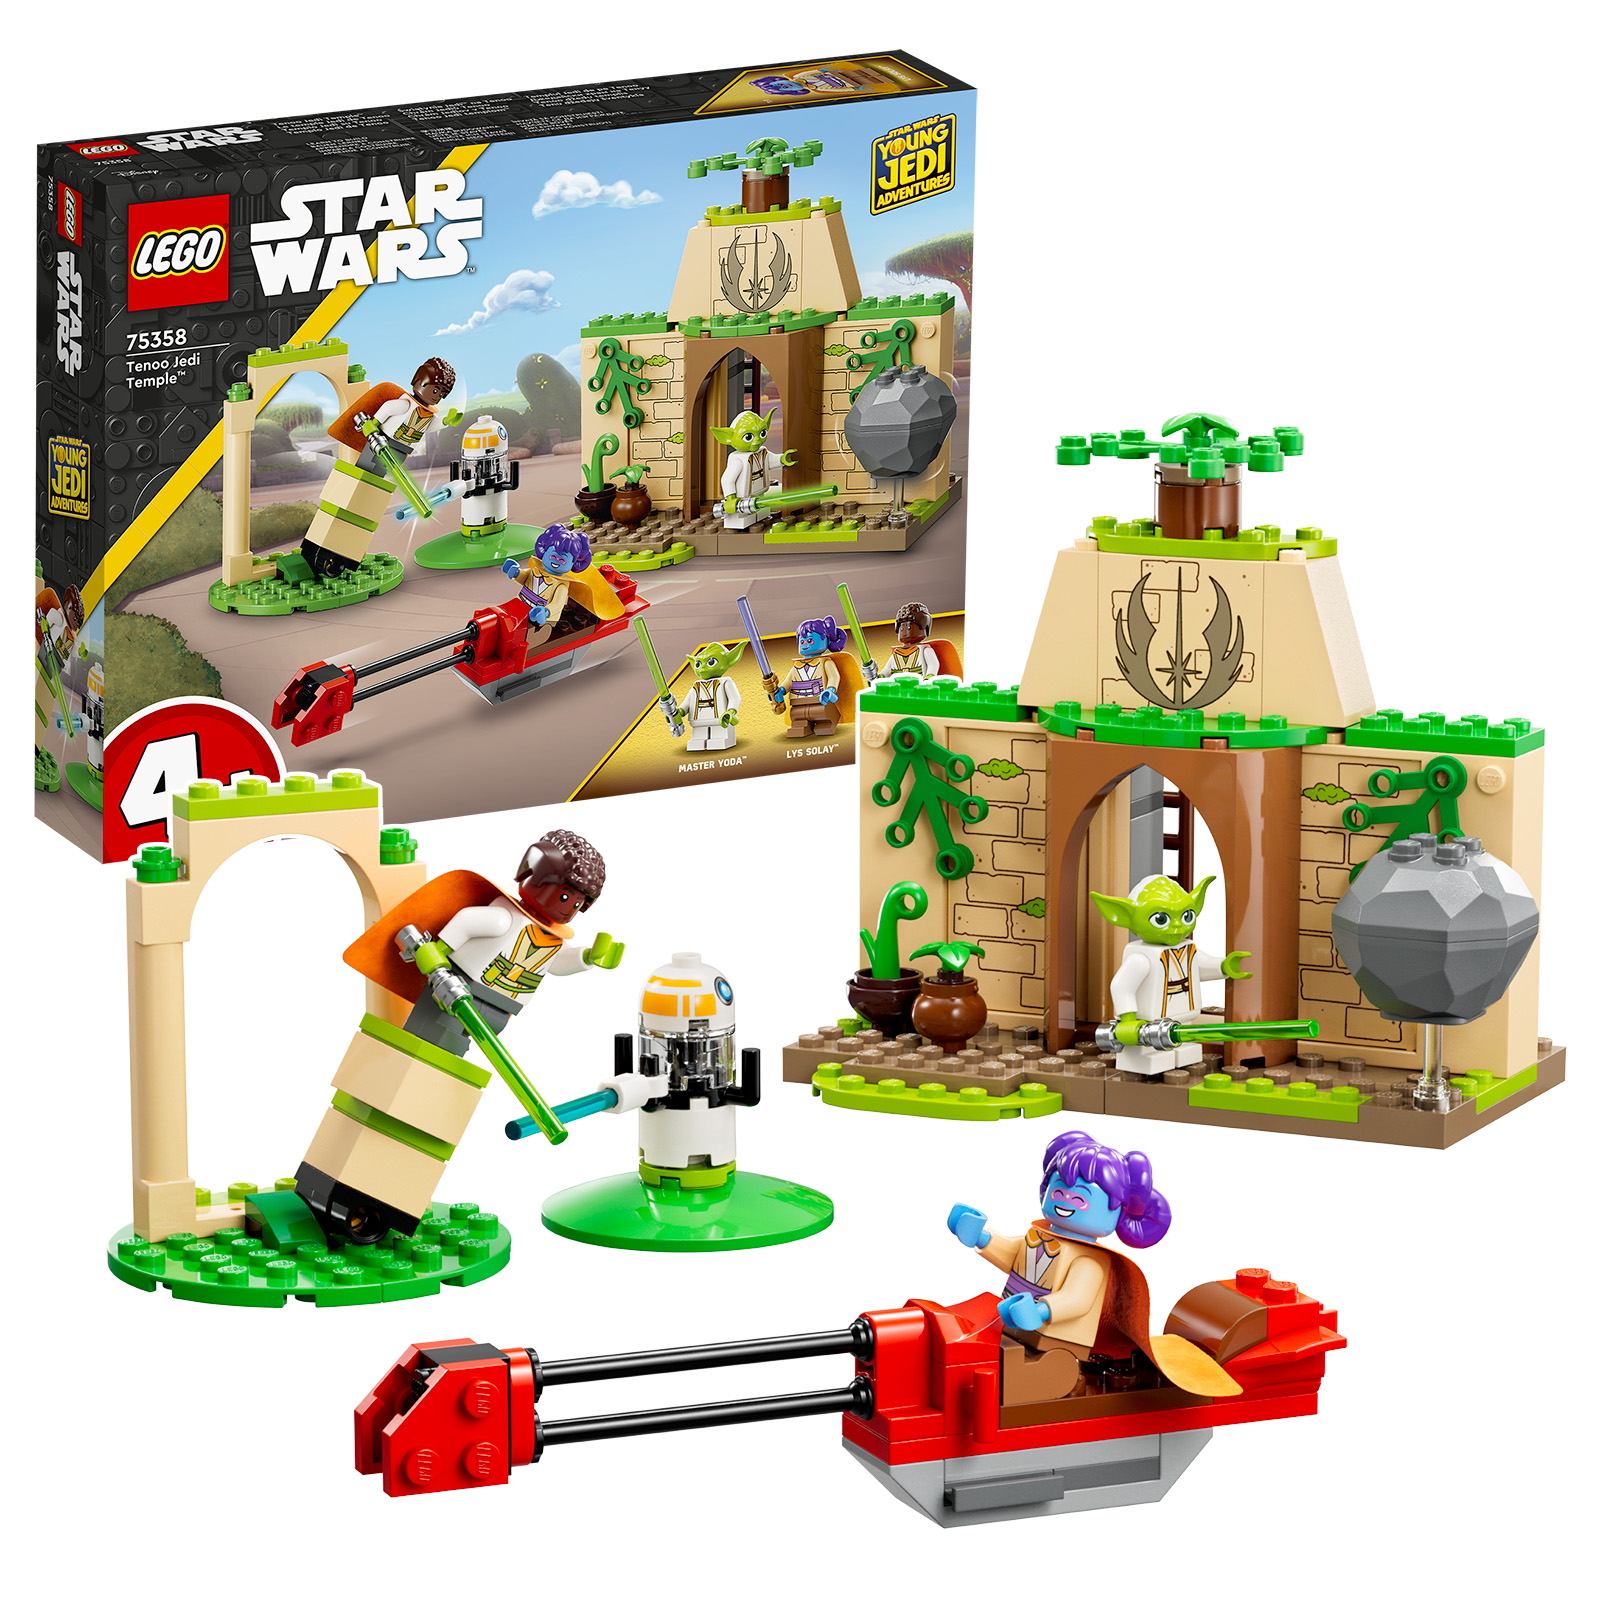 Nouveauté LEGO Star Wars Young Jedi Adventures : 75358 Tenoo Jedi Temple